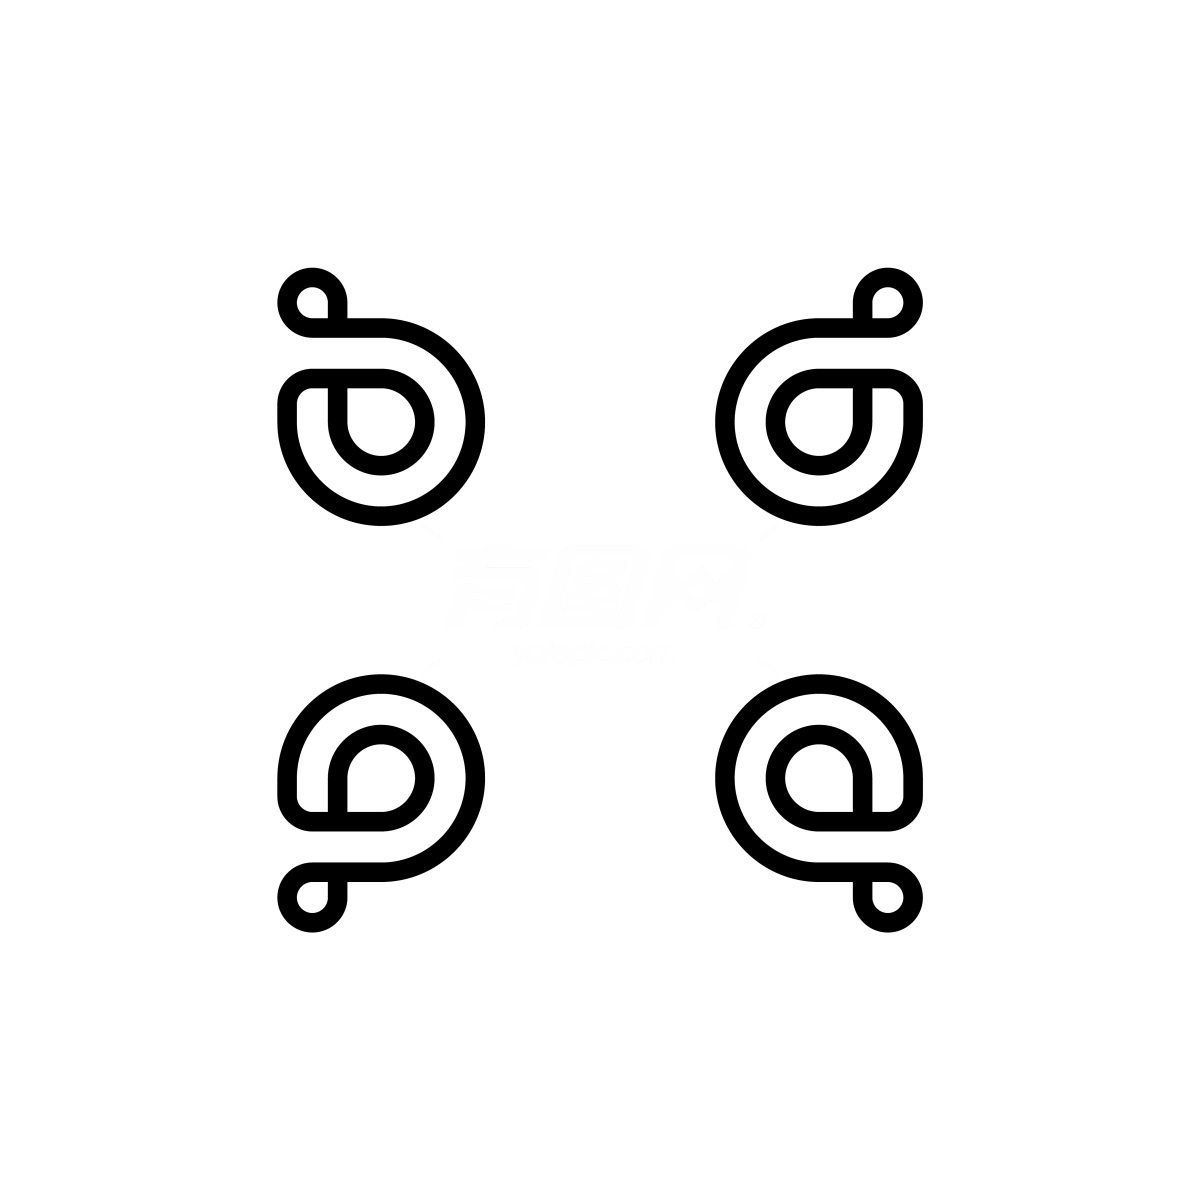 字母C图标logo